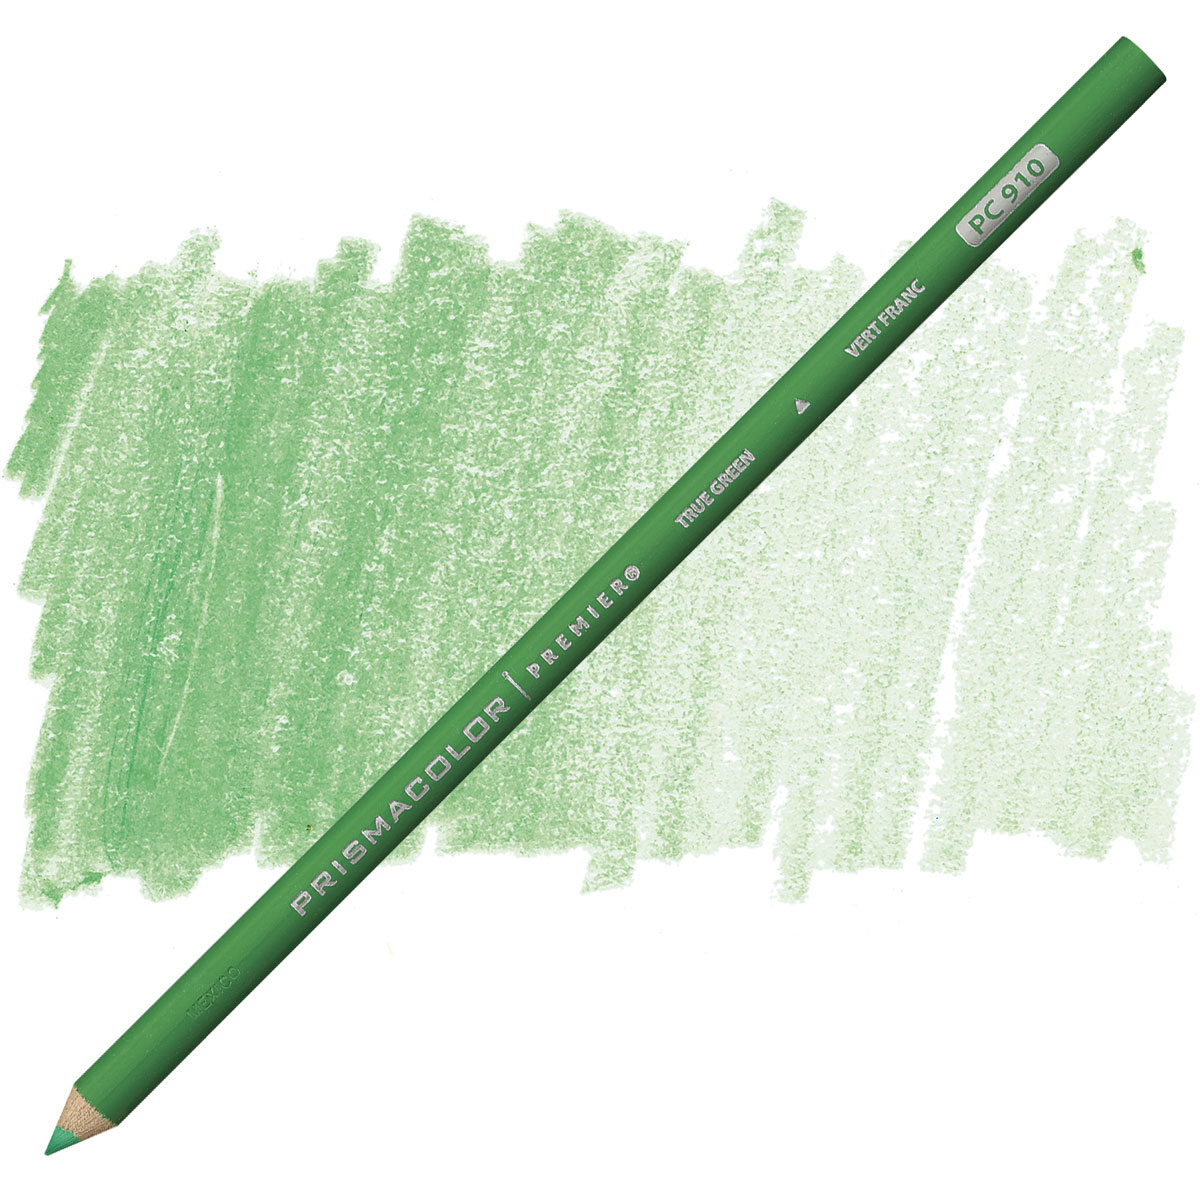 Prismacolor Premier Colored Pencil - True Green | BLICK Art Materials